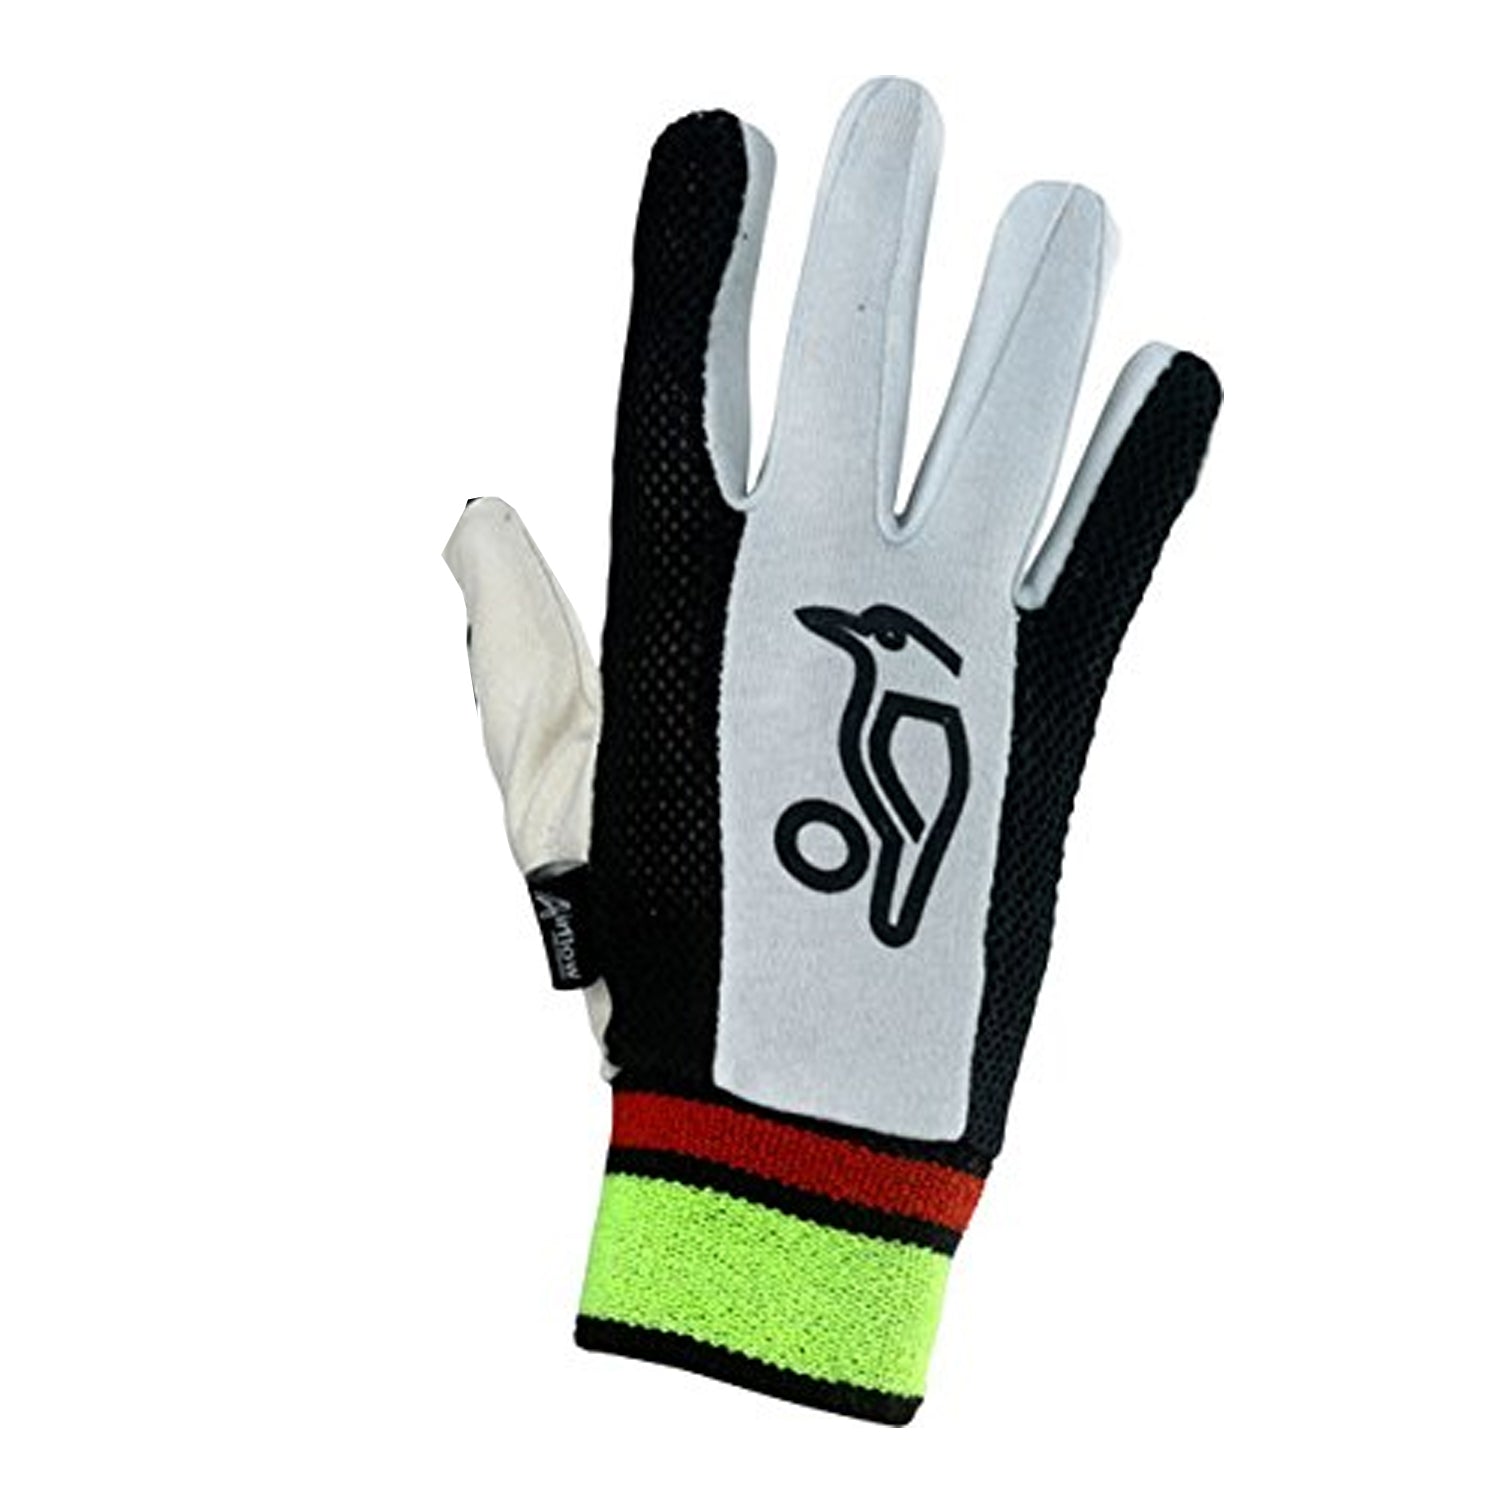 Kookaburra Chamois padded Inner Gloves - Best Price online Prokicksports.com